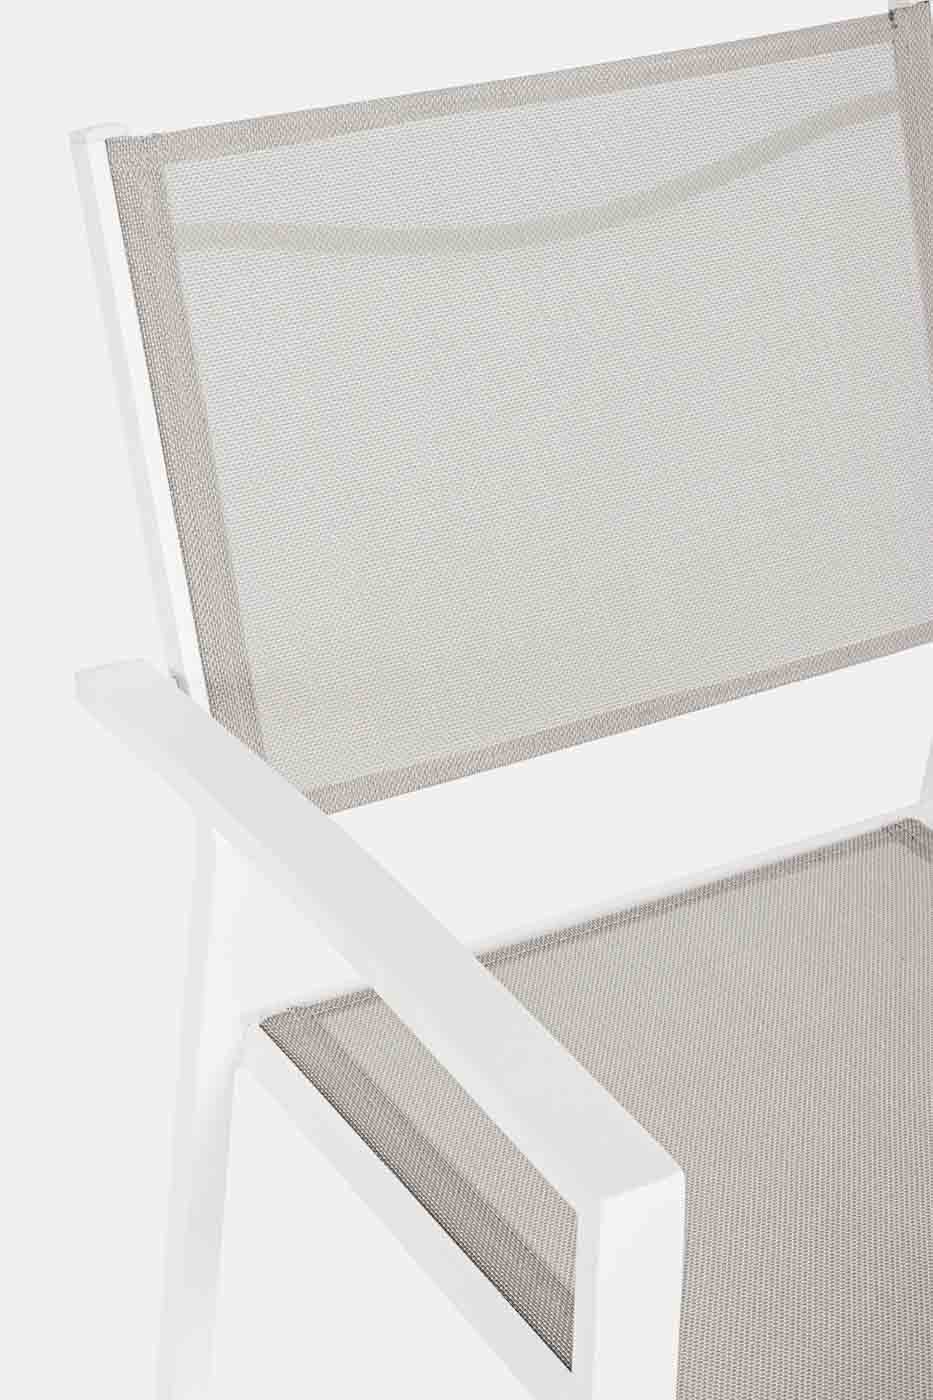 Gartenstuhl Hilde mit Armlehne und stapelbar. Gestell aus Aluminium und Textilene als Sitzfläche